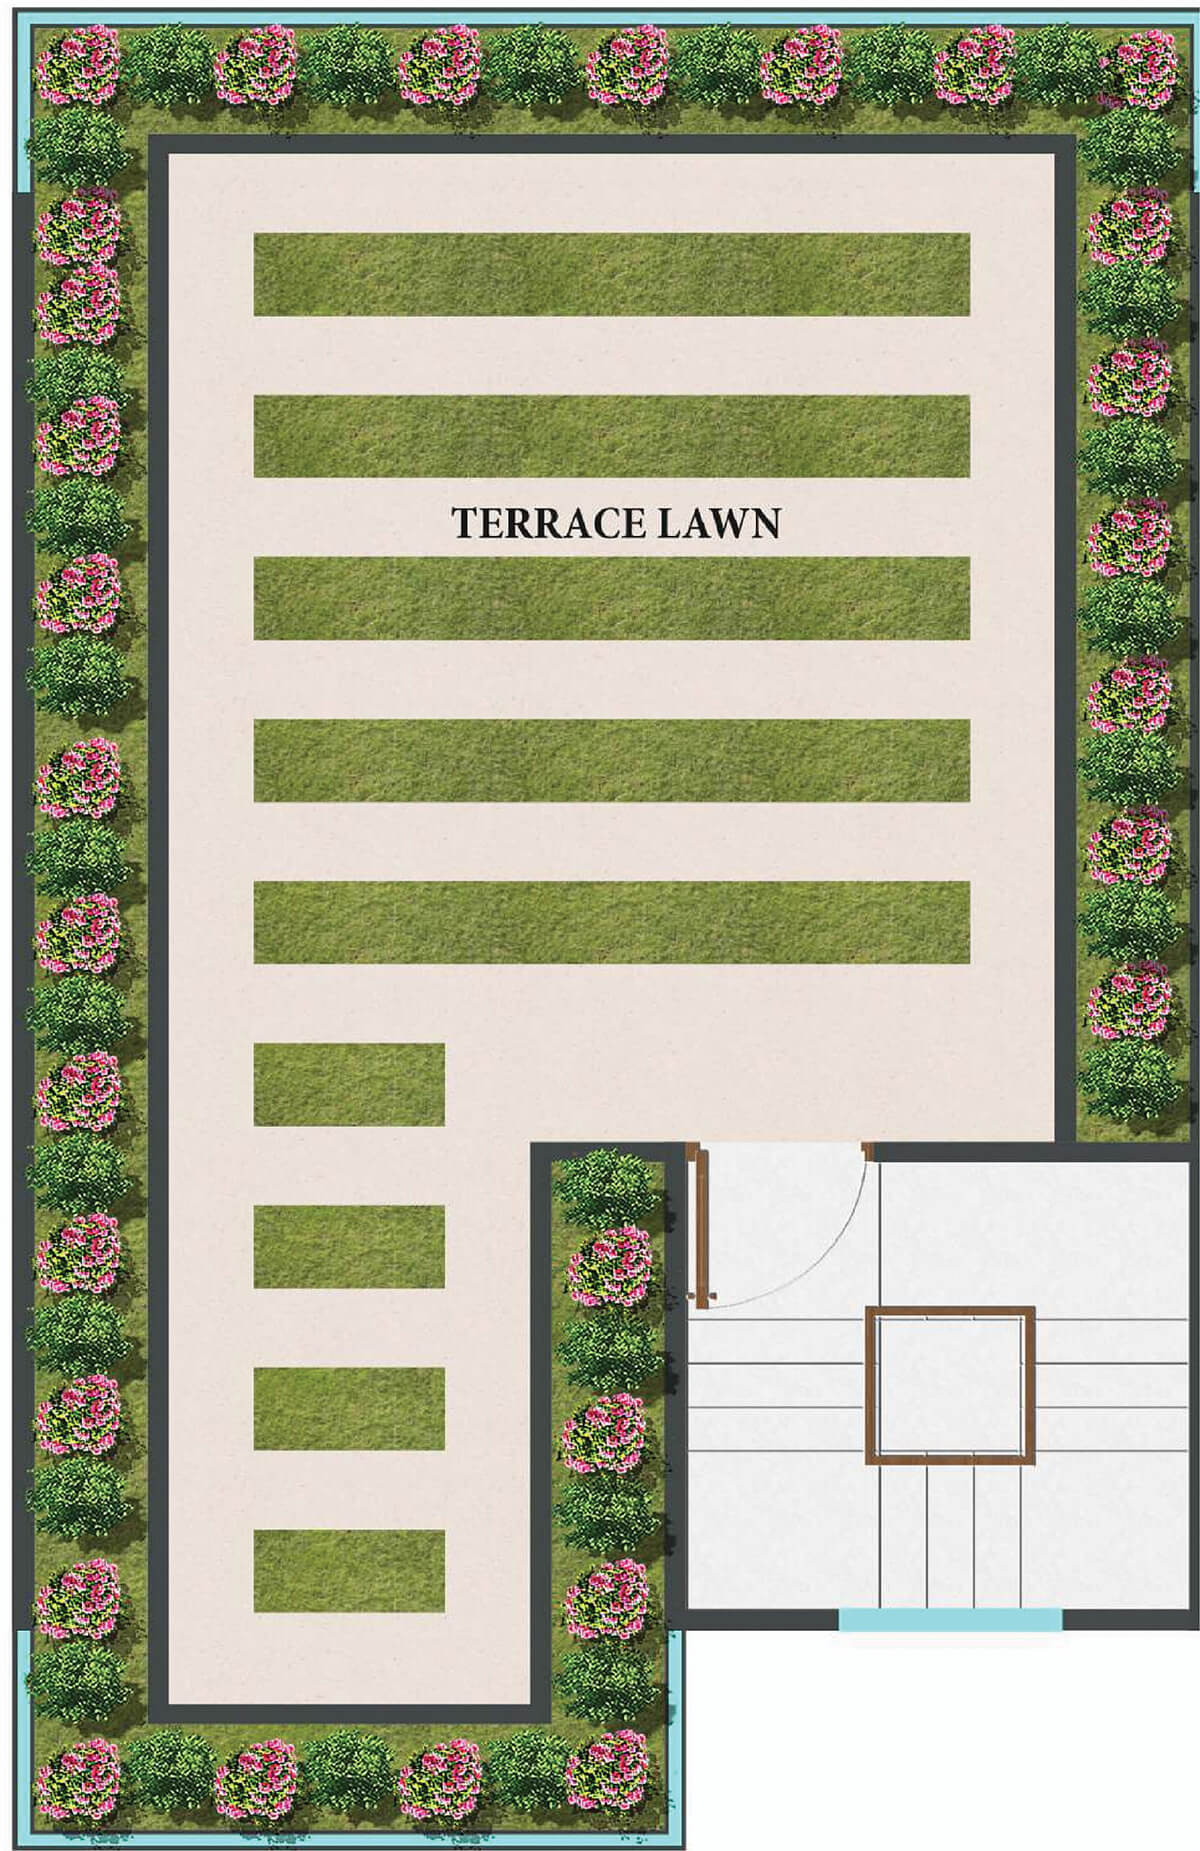 Terrace lawn